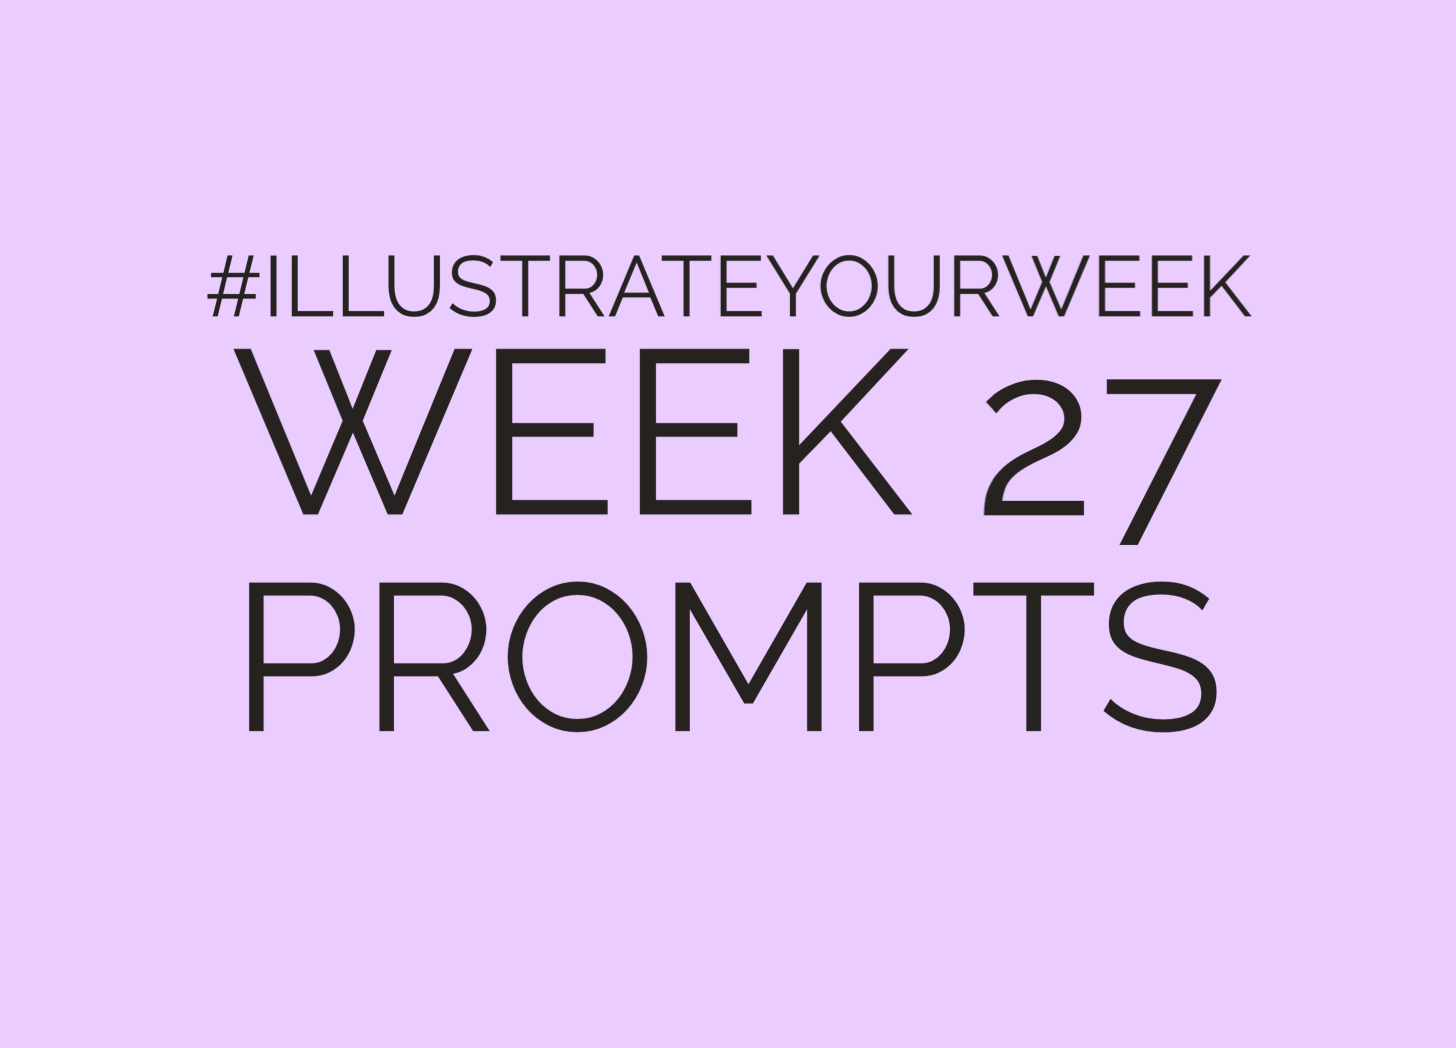 Week 27 Illustrate Your Week Prompts